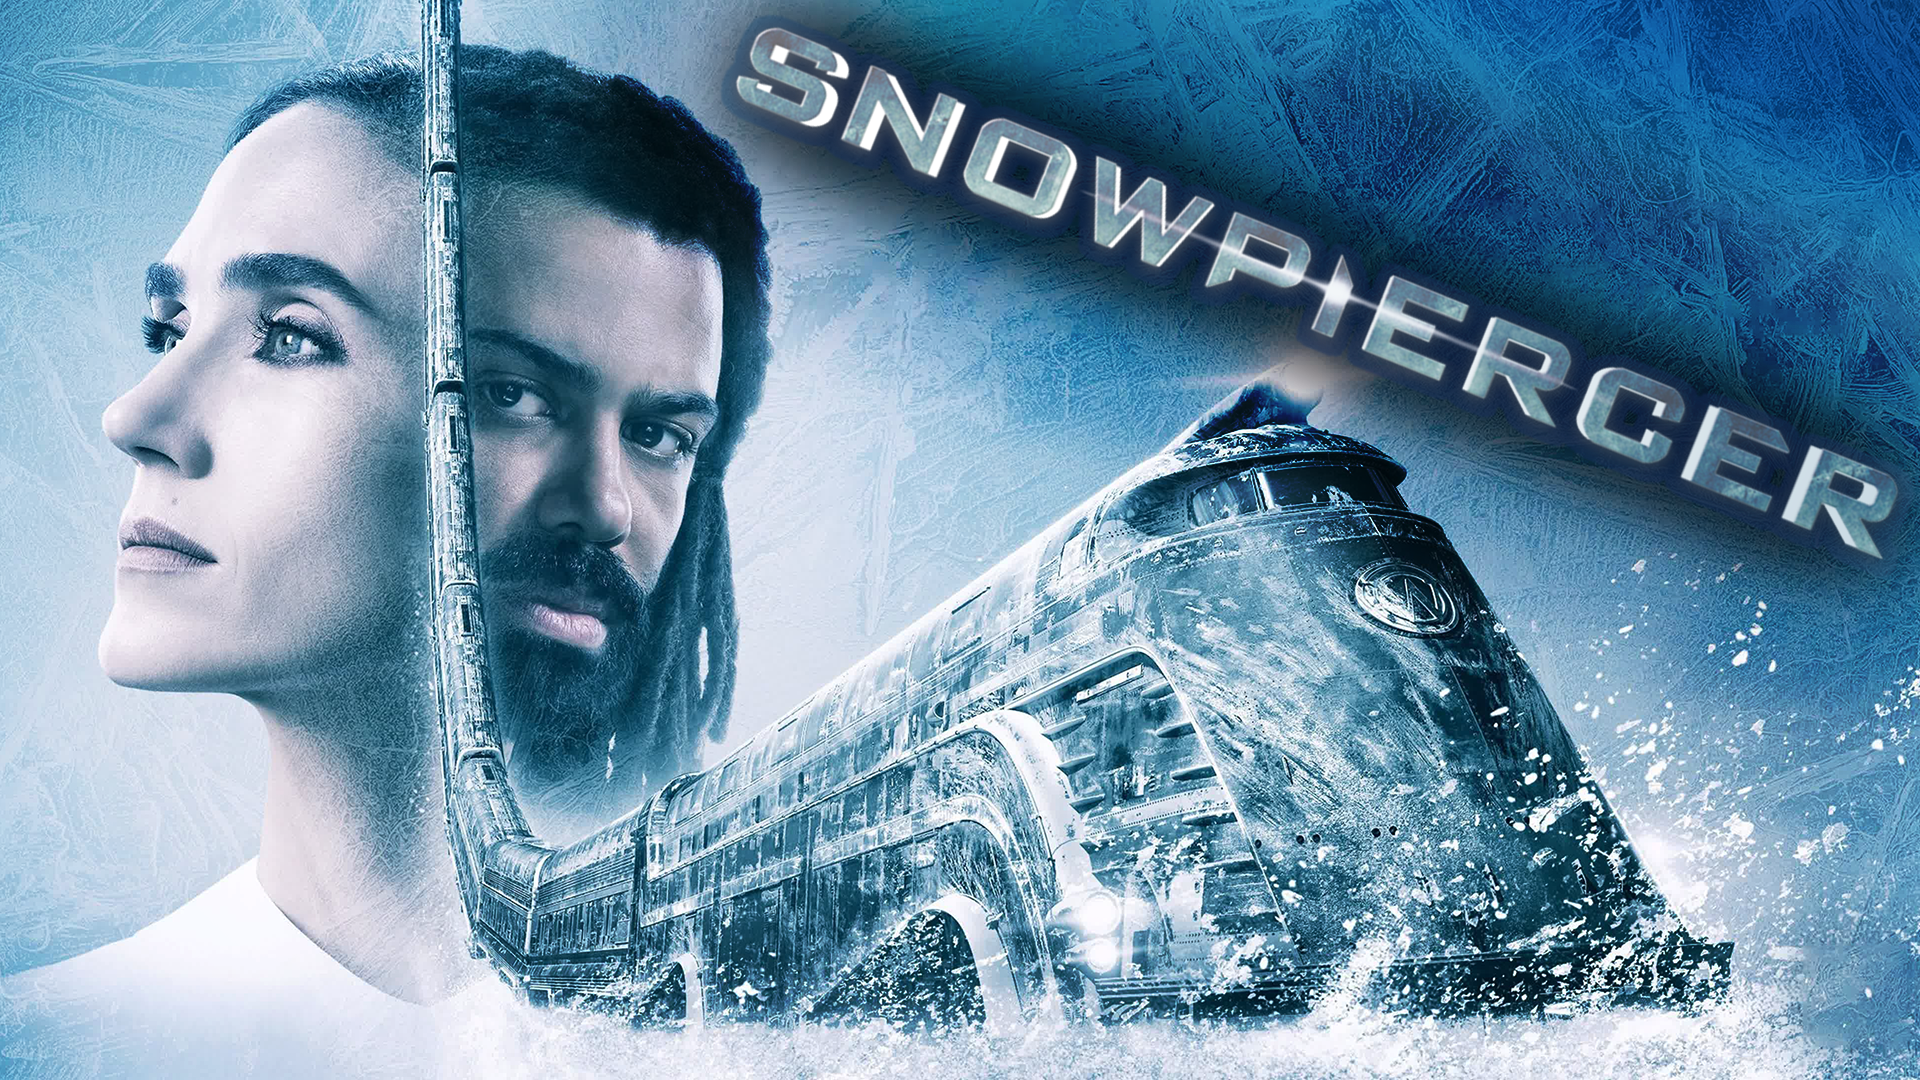 Сквозь снег – 2 сезон 3 серия / Snowpiercer